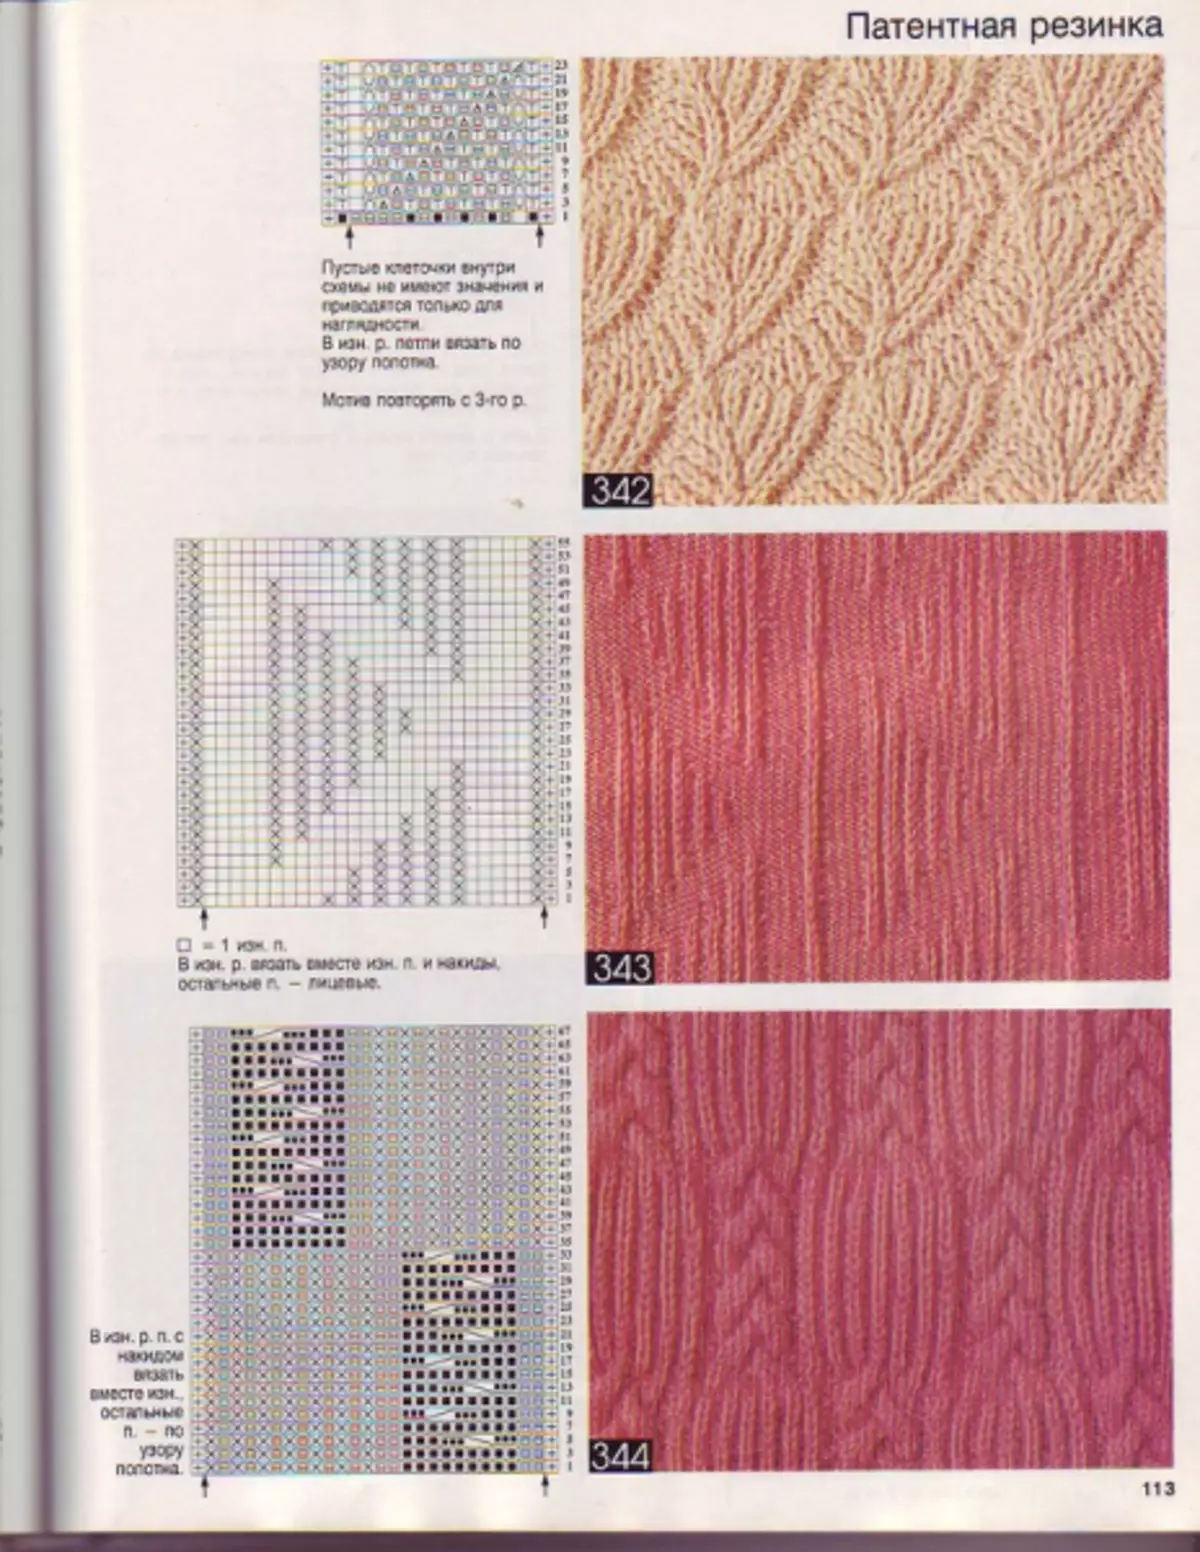 Patentna guma sa pletenjem s dijagramima i opisima u krugu